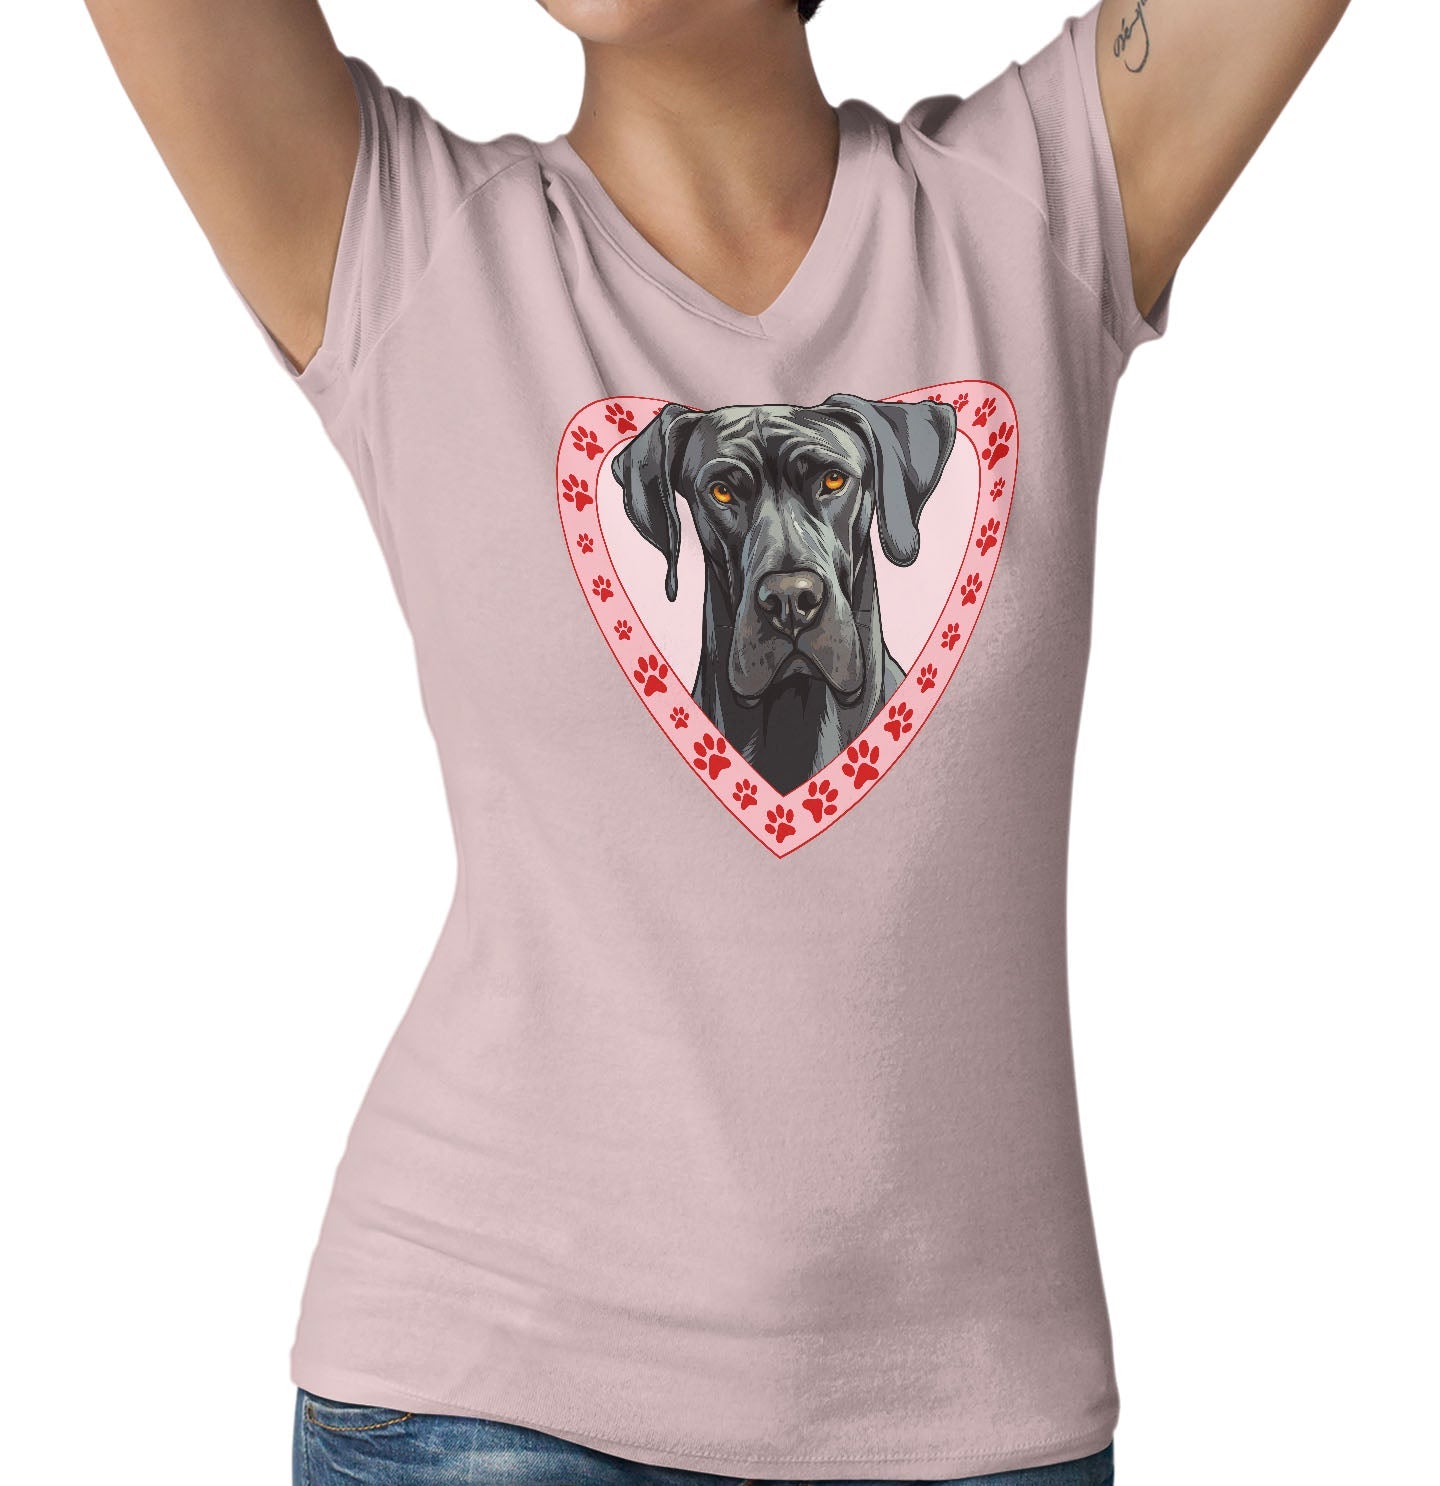 Great Dane (Black) Illustration In Heart - Women's V-Neck T-Shirt